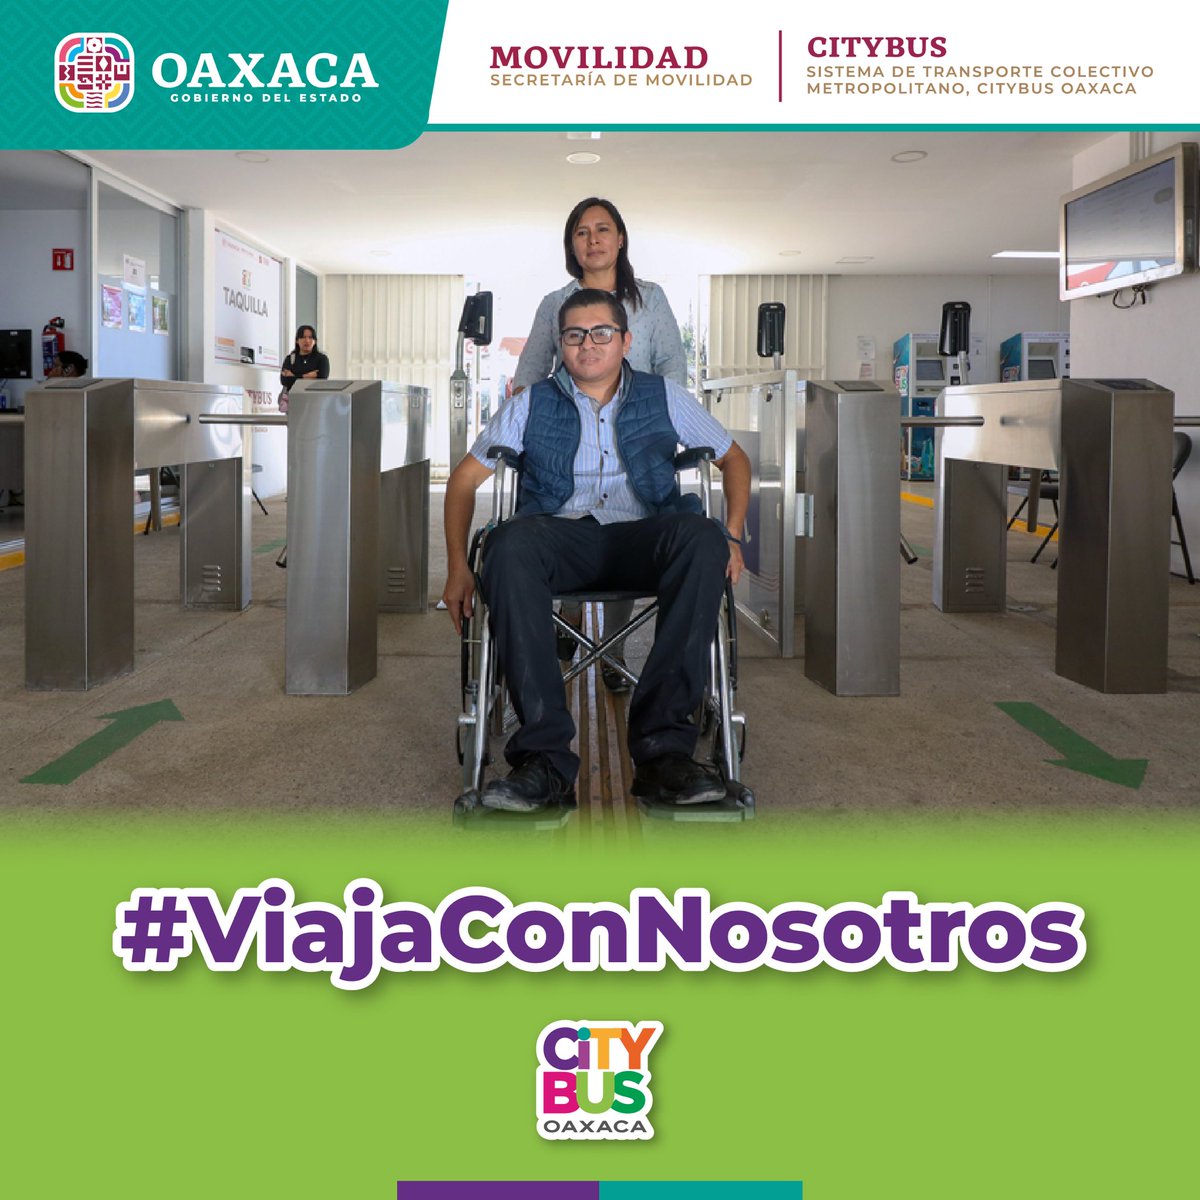 Las unidades del @Citybus_GobOax son inclusivas, al contar con rampas de ascenso y descenso para personas usuarias en silla de ruedas y con movilidad limitada. #ViajaConNosotros